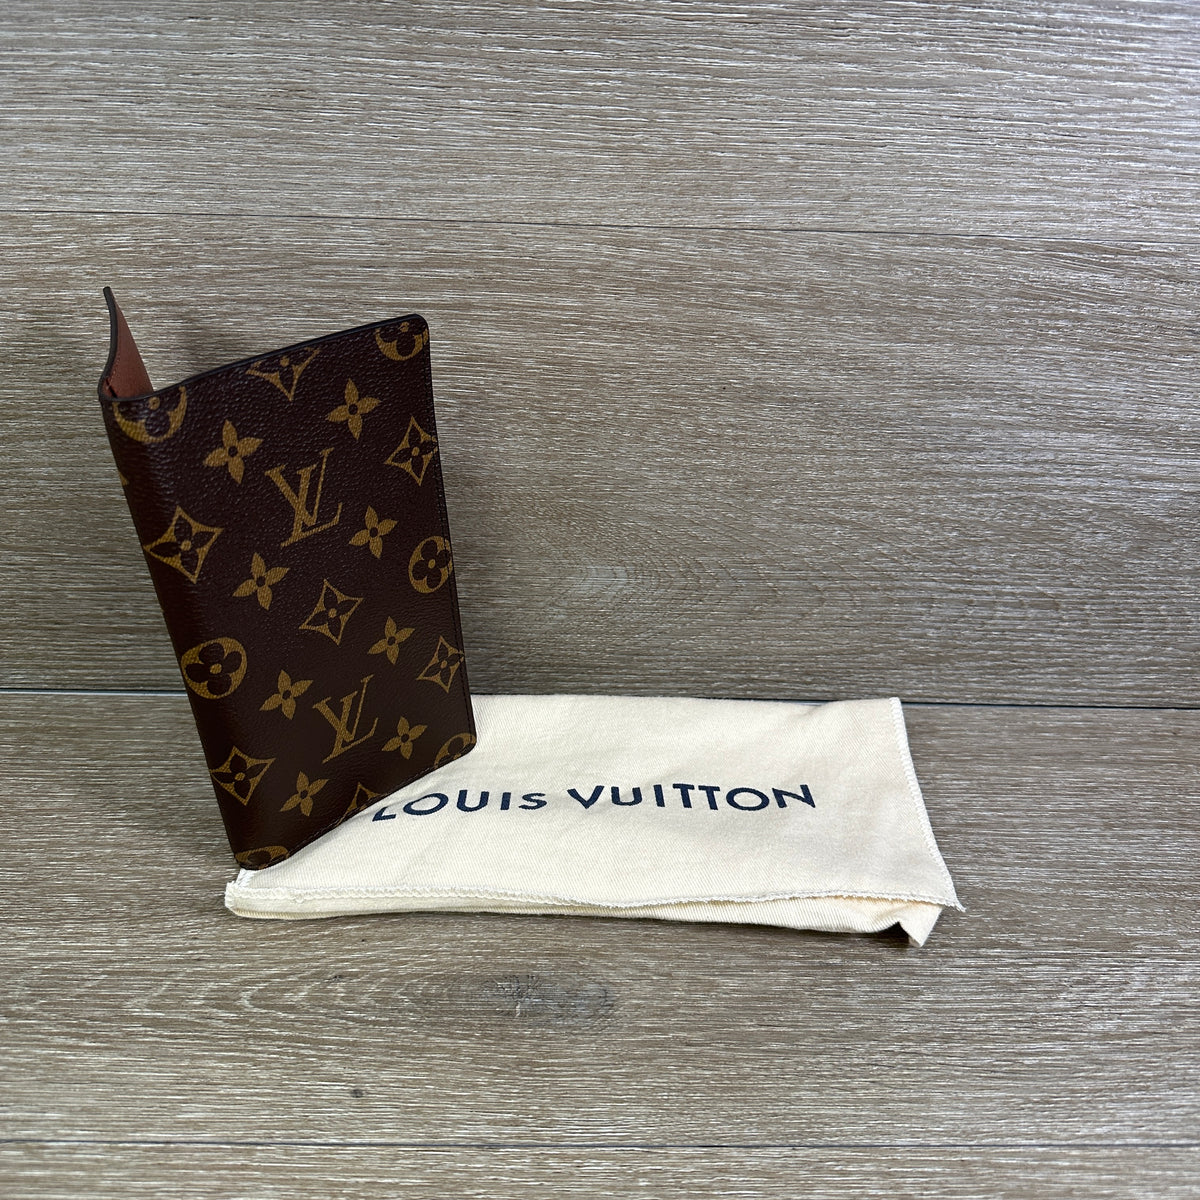 Louis Vuitton Paris Agenda Monogram Geode Zipper Wallet Organizer M62950